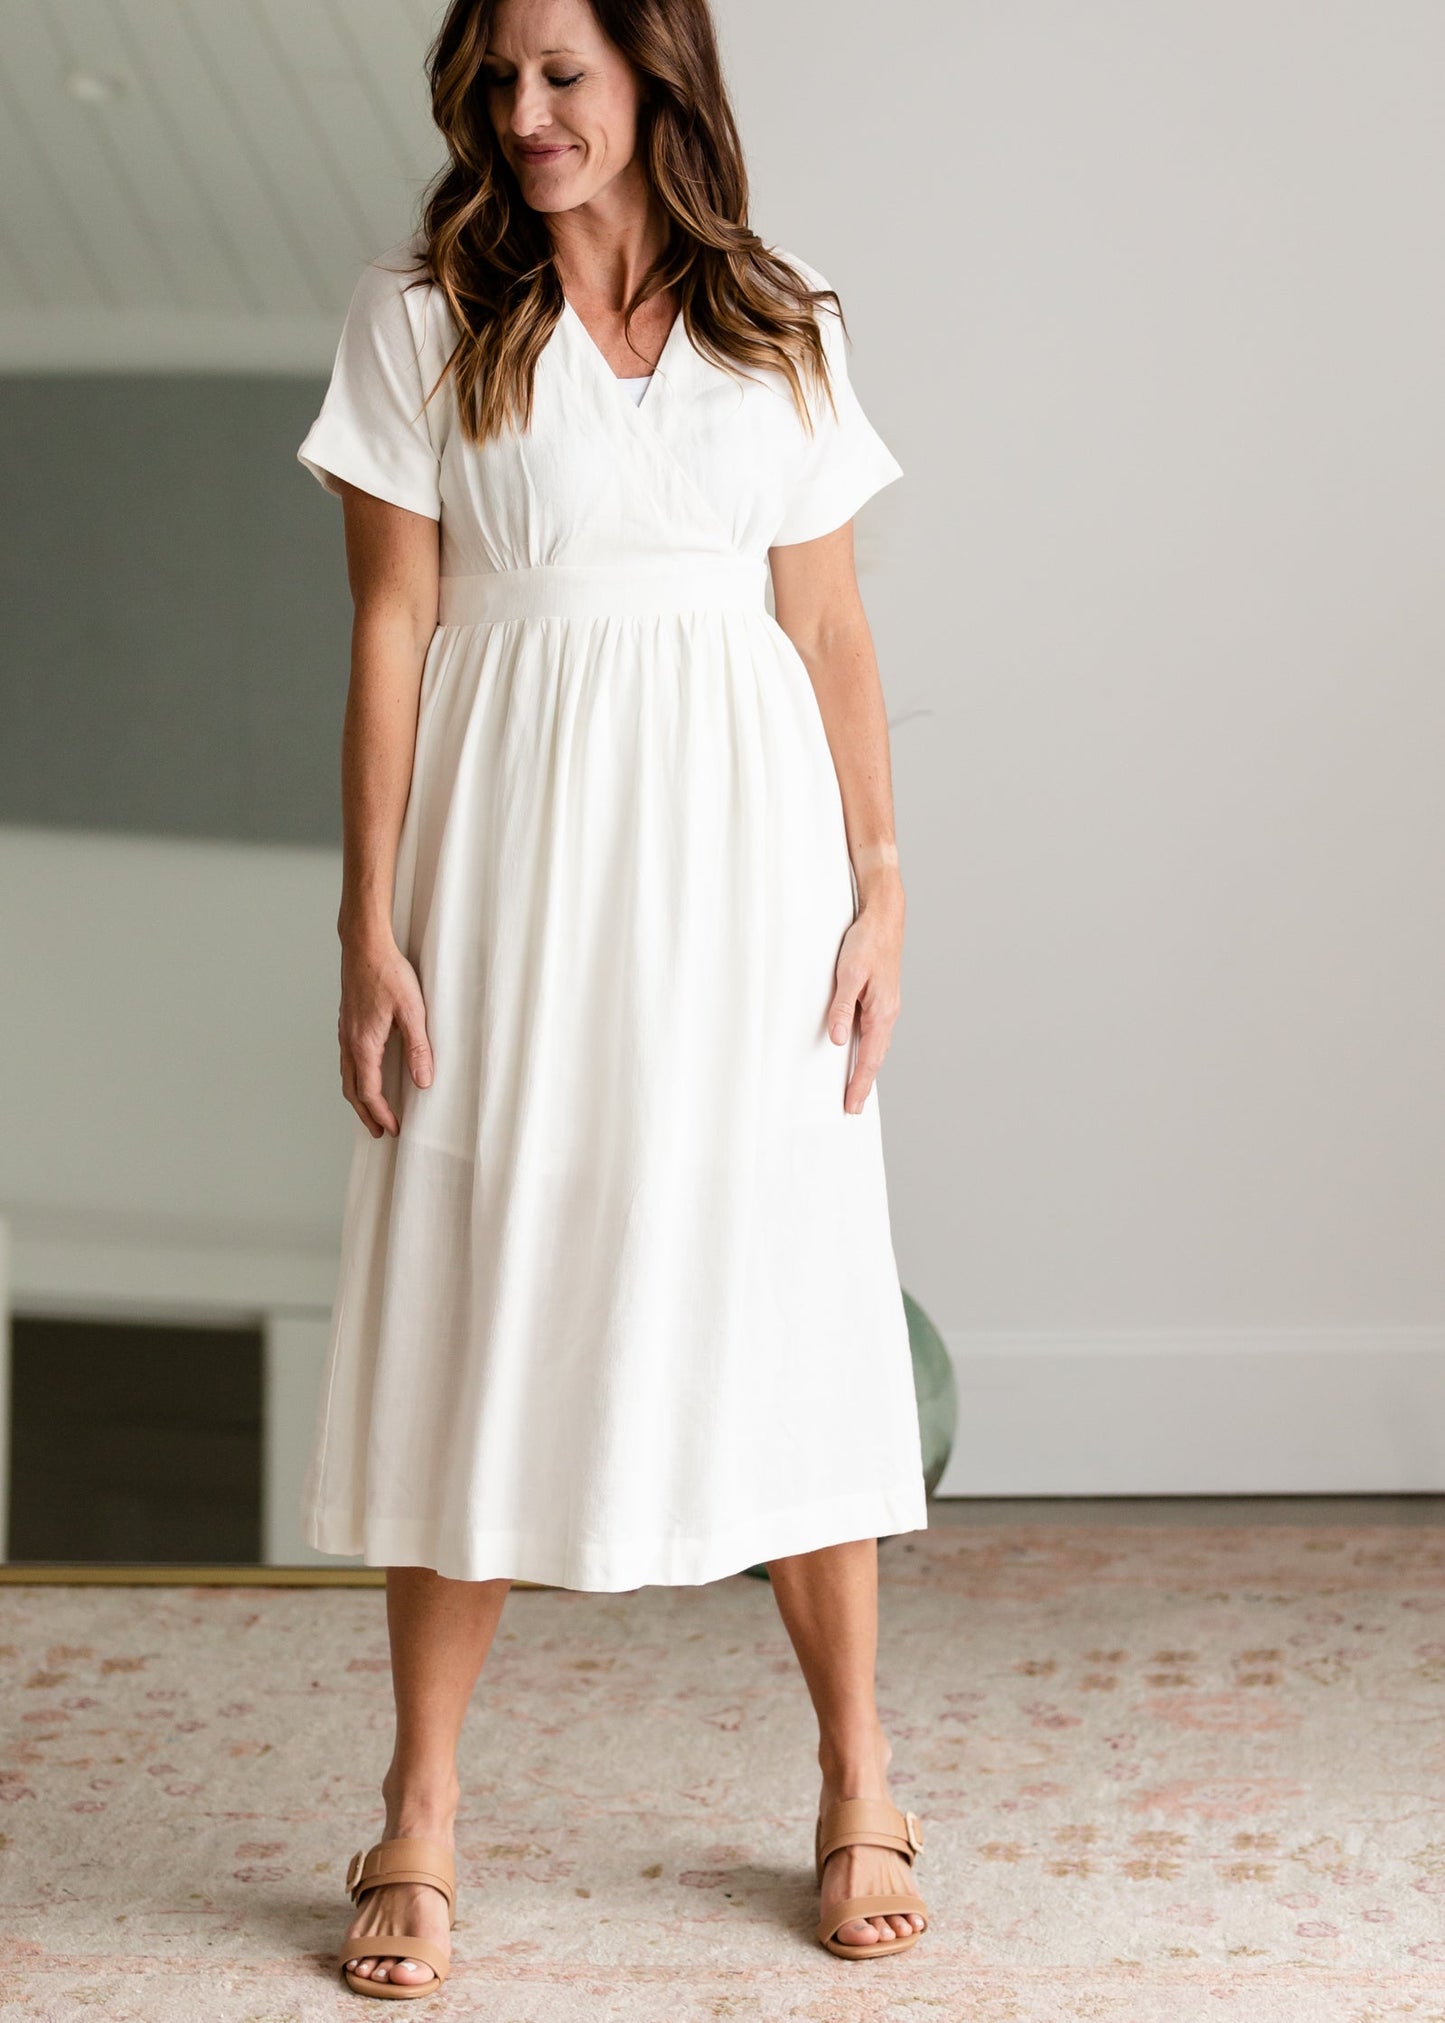 V-Neck Pleated Classic White Midi Dress Dresses Mod Ref